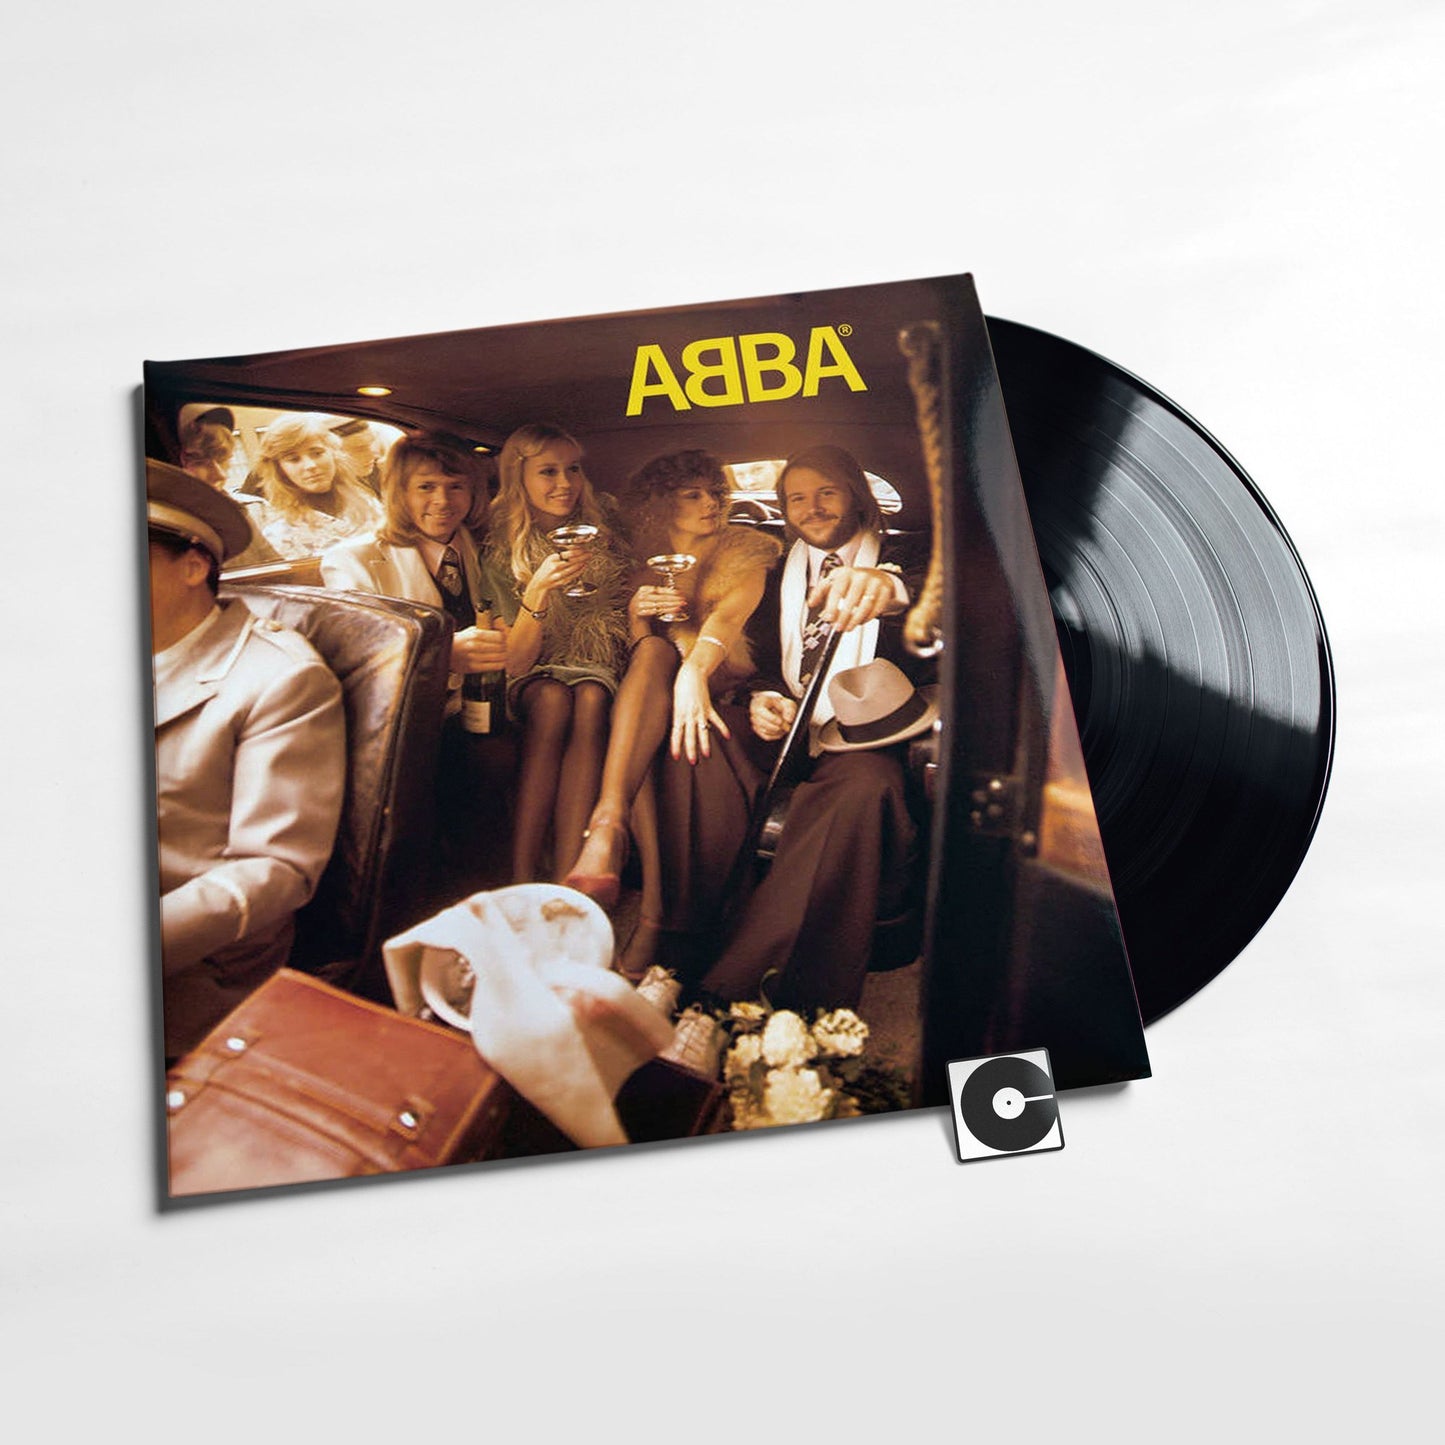 ABBA - "ABBA"